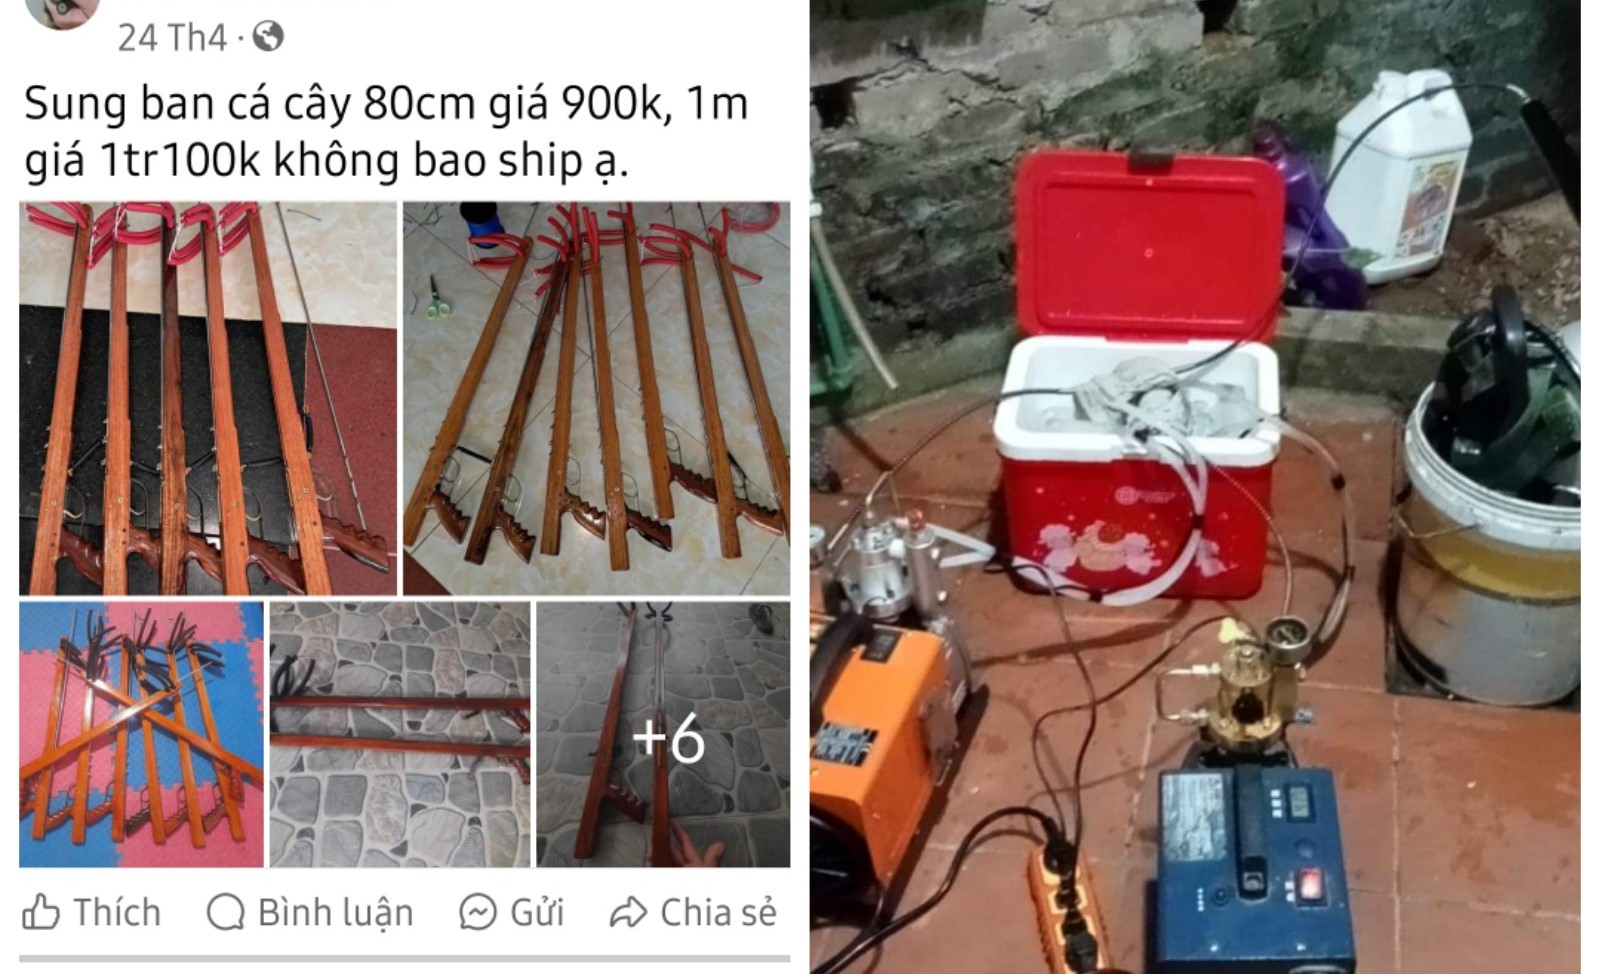 Dụng cụ bắn cá, đồ kích điện thủy hải sản đang được bày bán tràn lan trên mạng xã hội